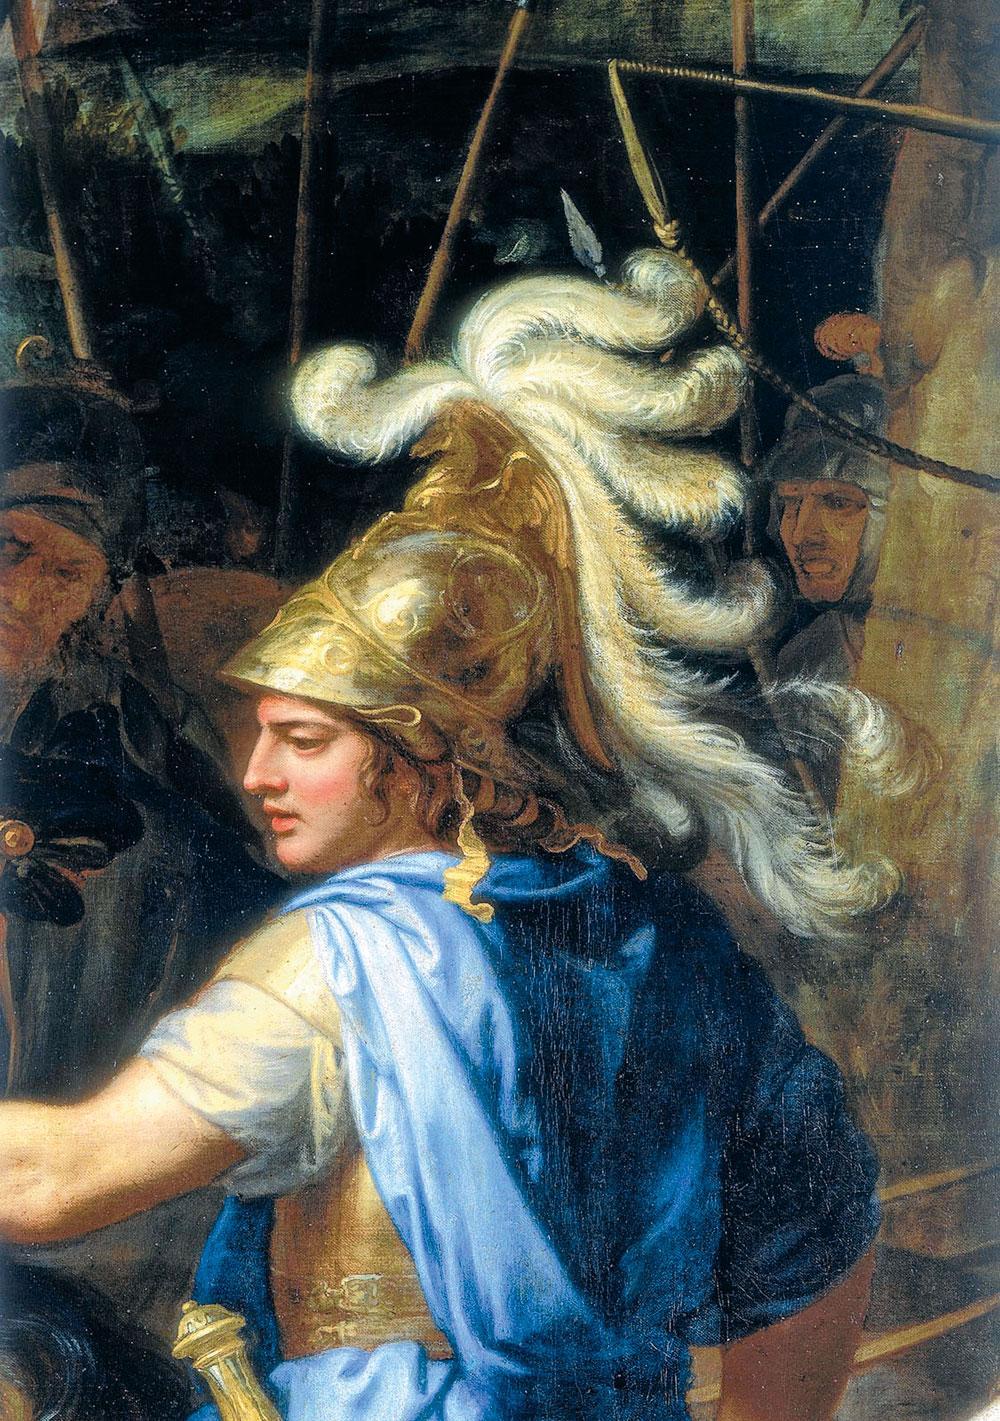 Le roi Alexandre, initiateur du phénomène de cosmopolitisme.